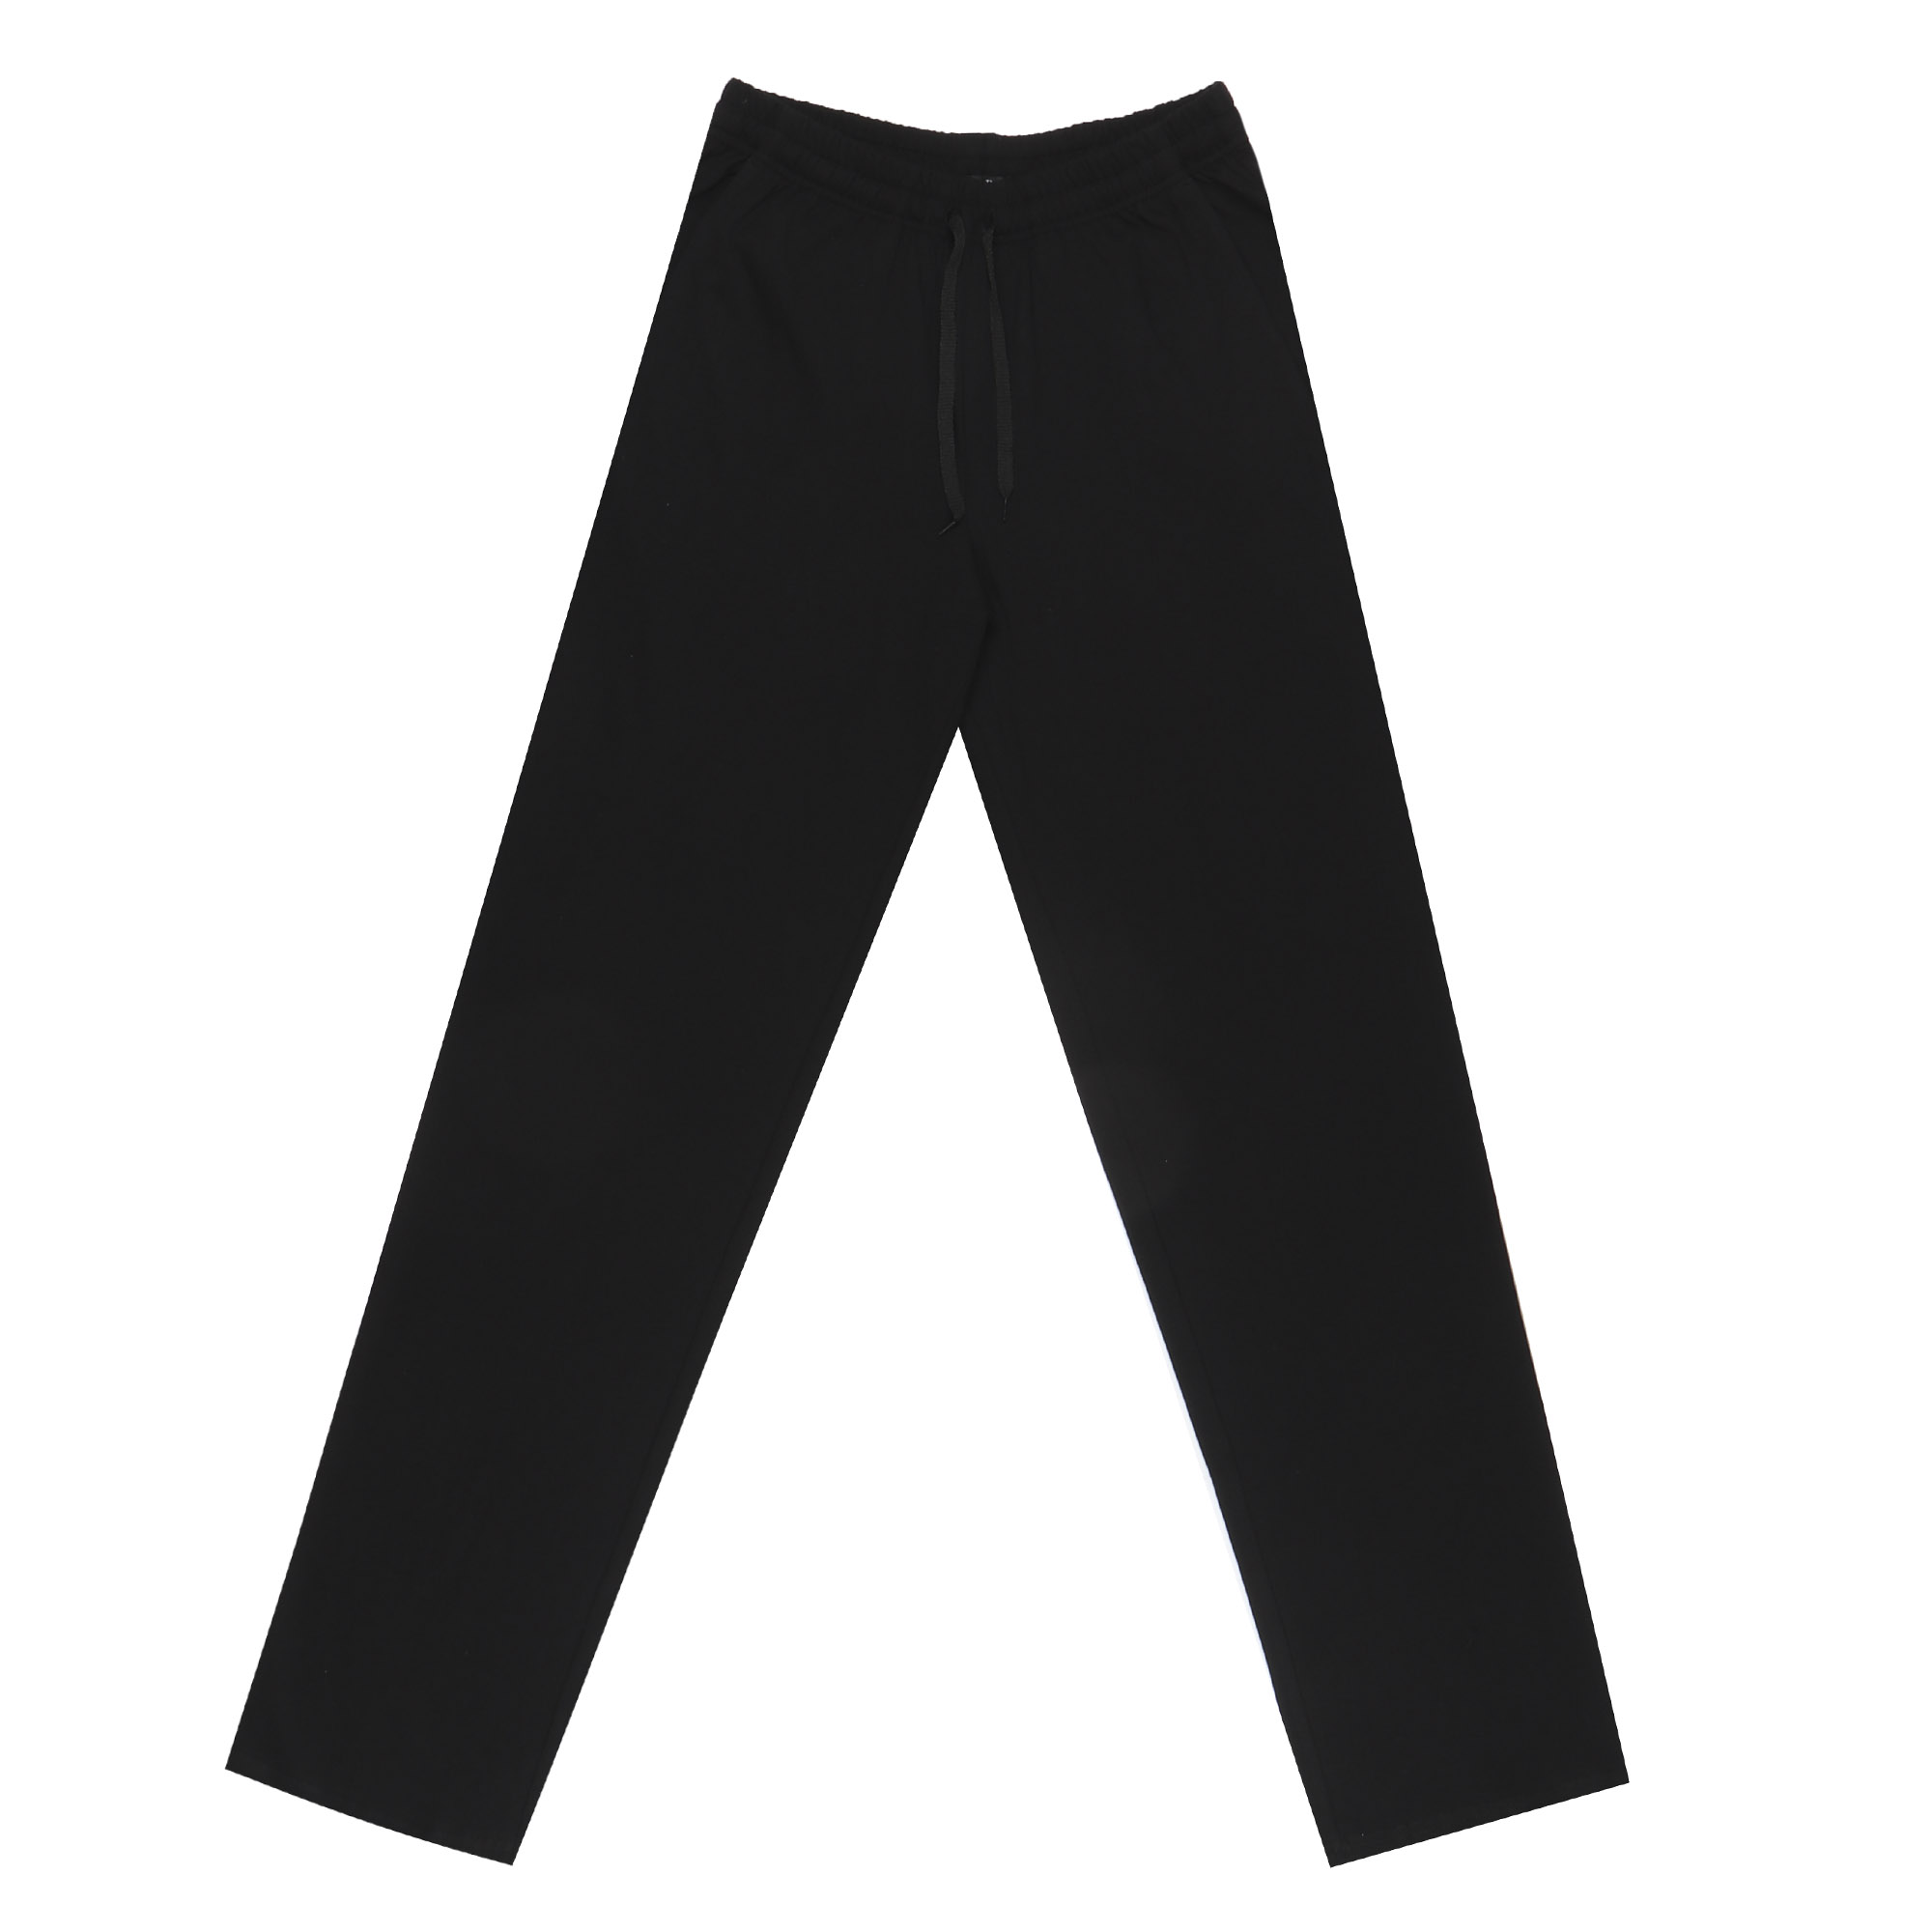 Мужские брюки Pantelemone PDB-021 46 черные, цвет черный, размер 46 - фото 1